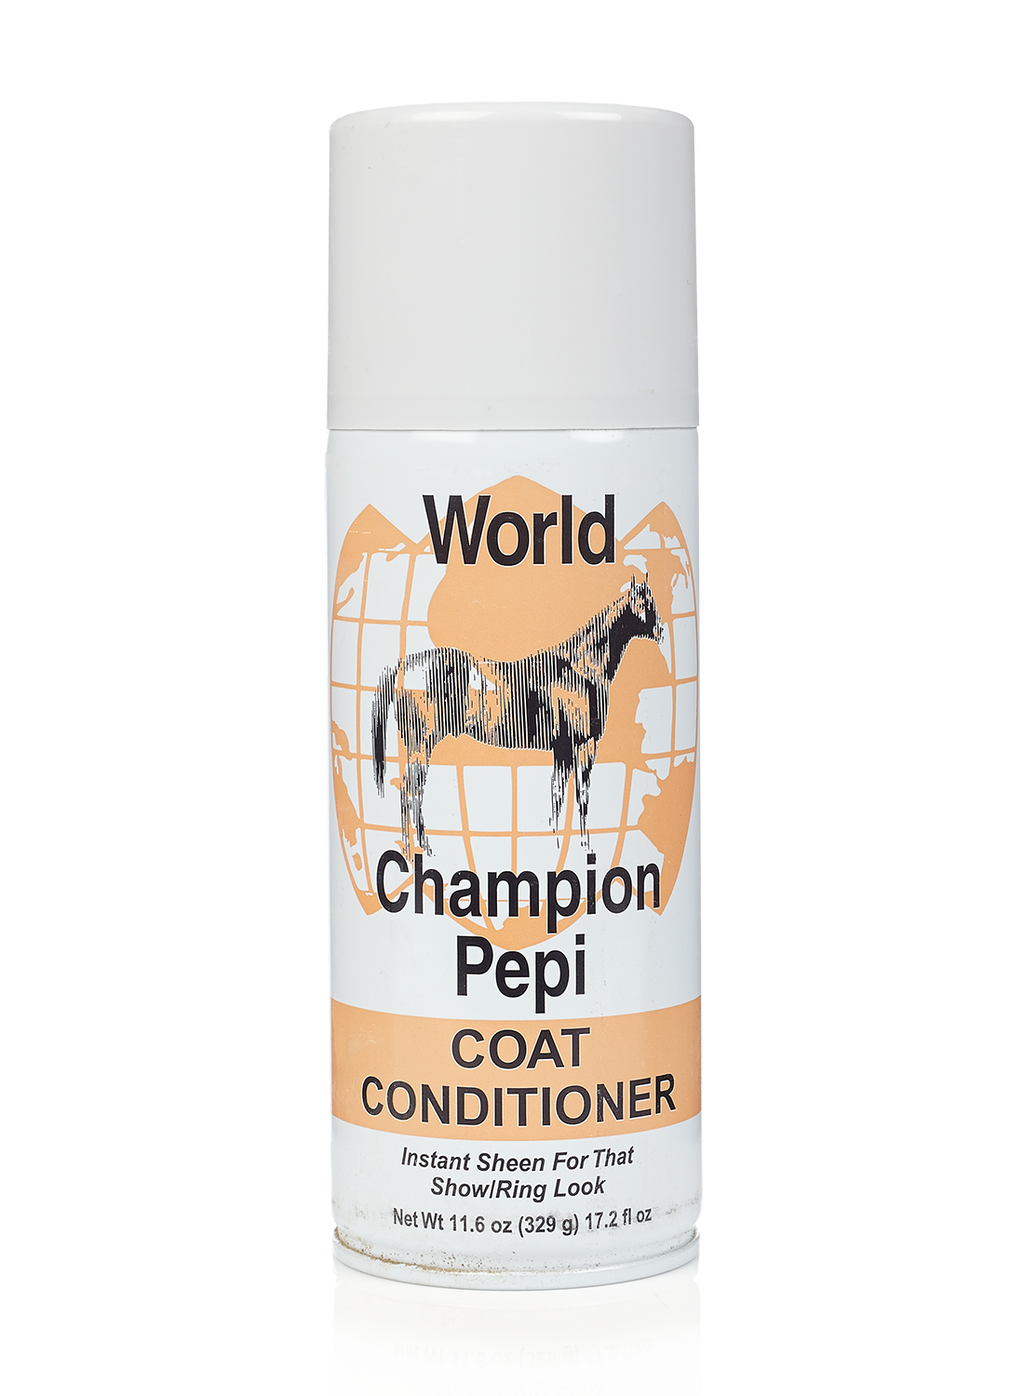 World champion pepi - Livestock Show Equipment